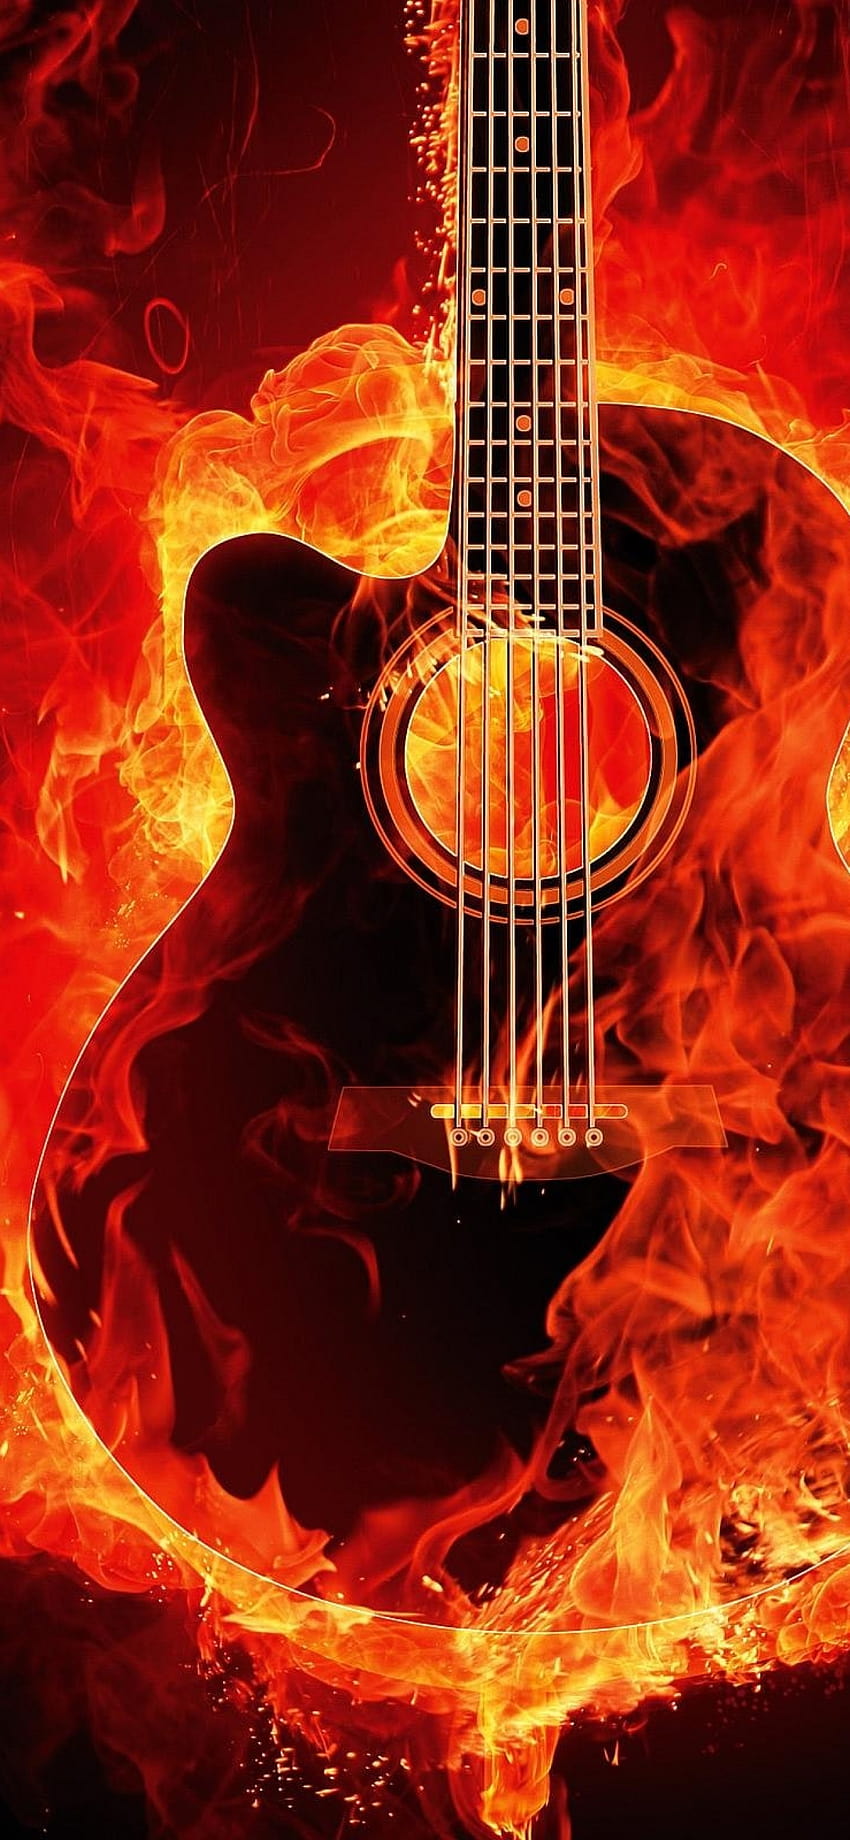 Guitarra flamejante, fundo preto, instrumento musical, fogo, preto/escuro, guitarra em chamas Papel de parede de celular HD